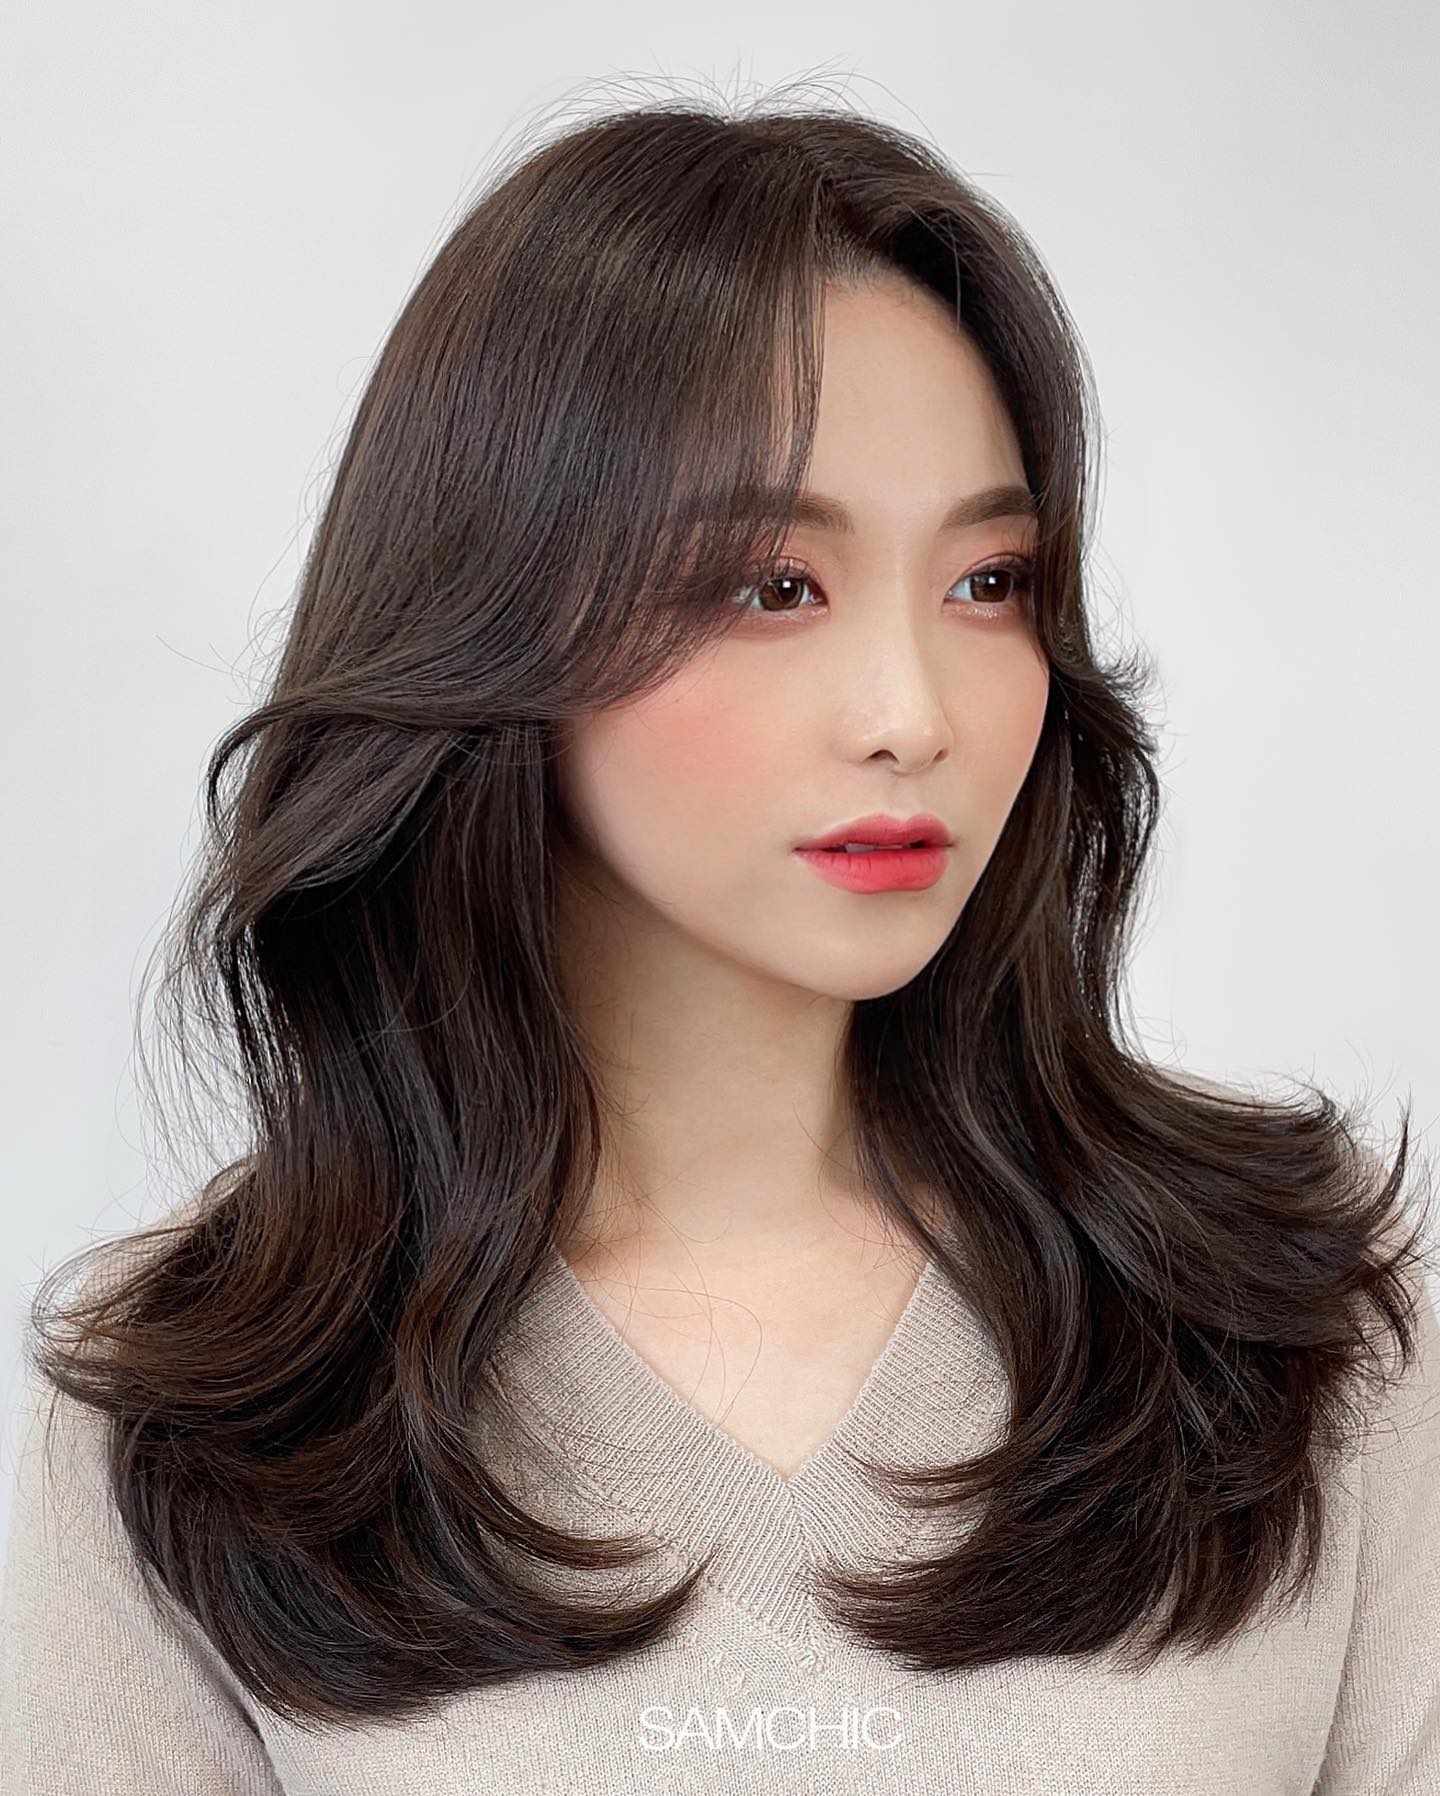 4 tuyệt chiêu dưỡng tóc sống còn học lỏm từ gái Hàn giúp tóc mềm mướt, bồng bềnh - Ảnh 5.